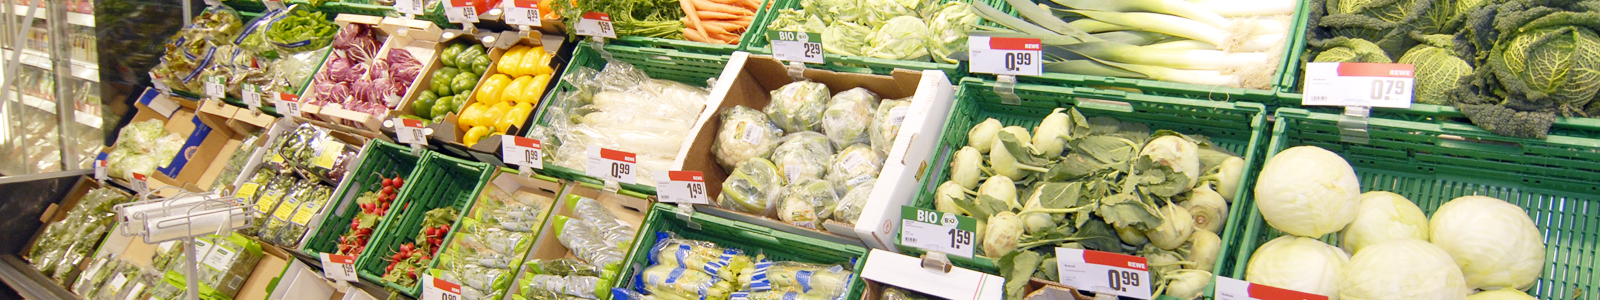 Gemüseabteilung im Supermarkt ©DLR